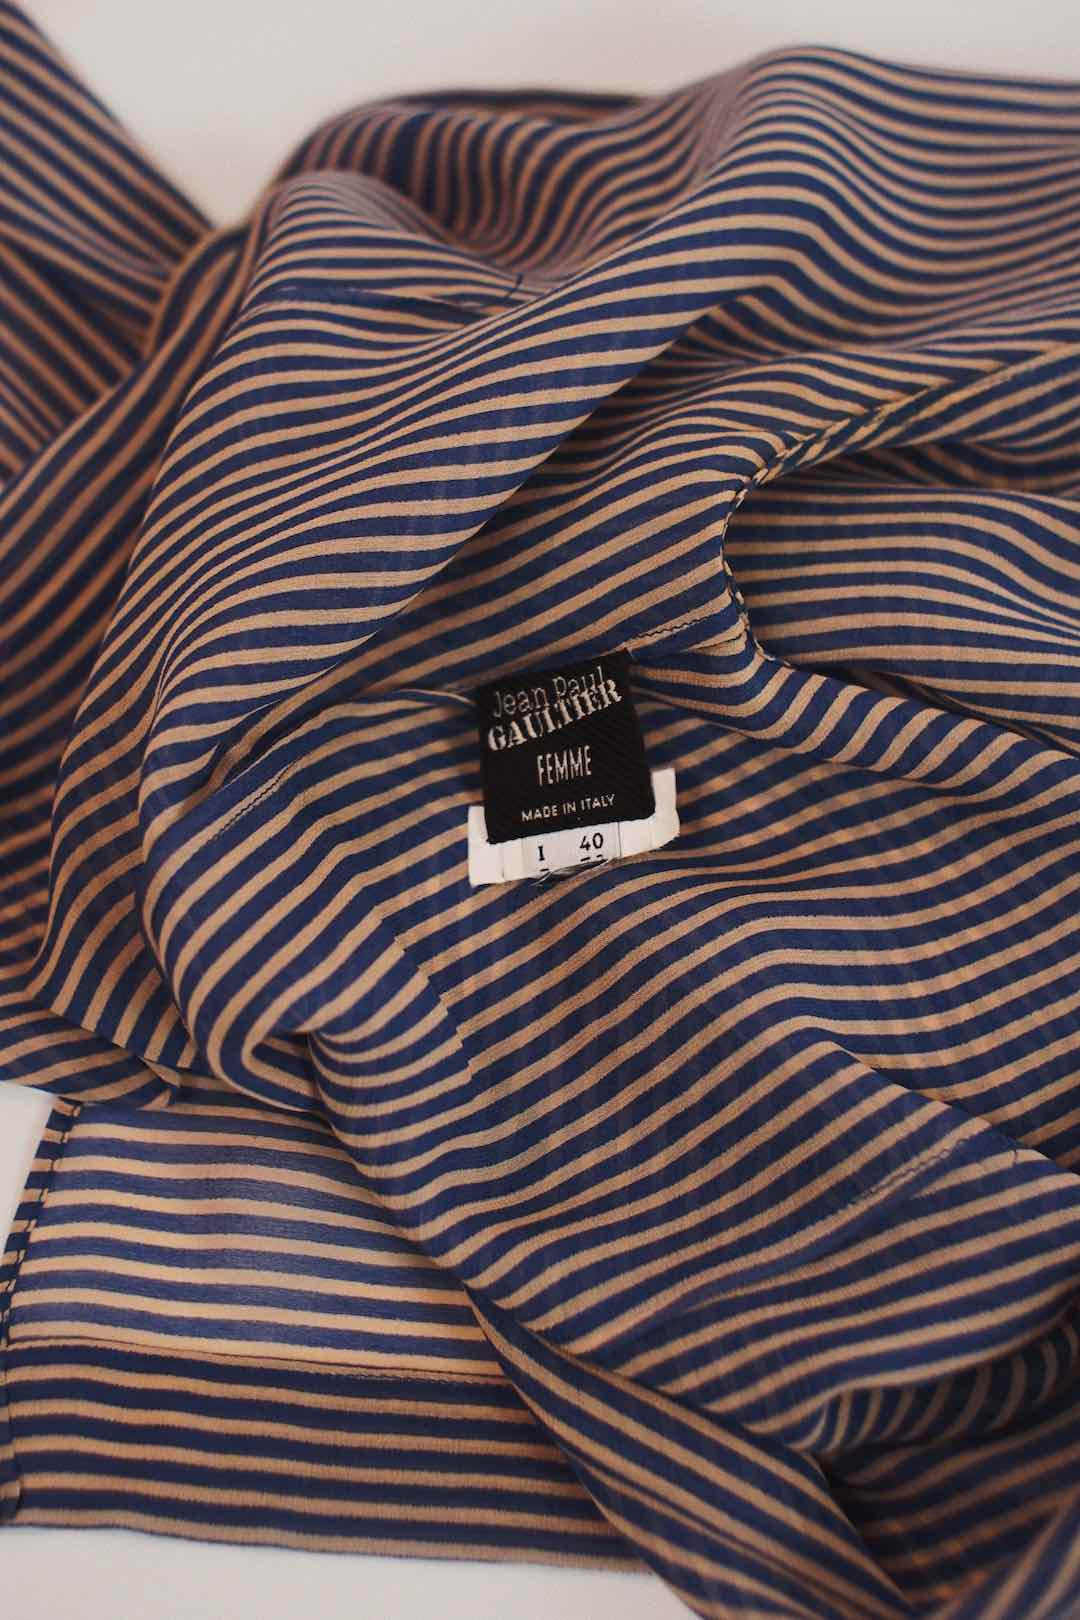 Jean Paul Gaultier silk striped shirt